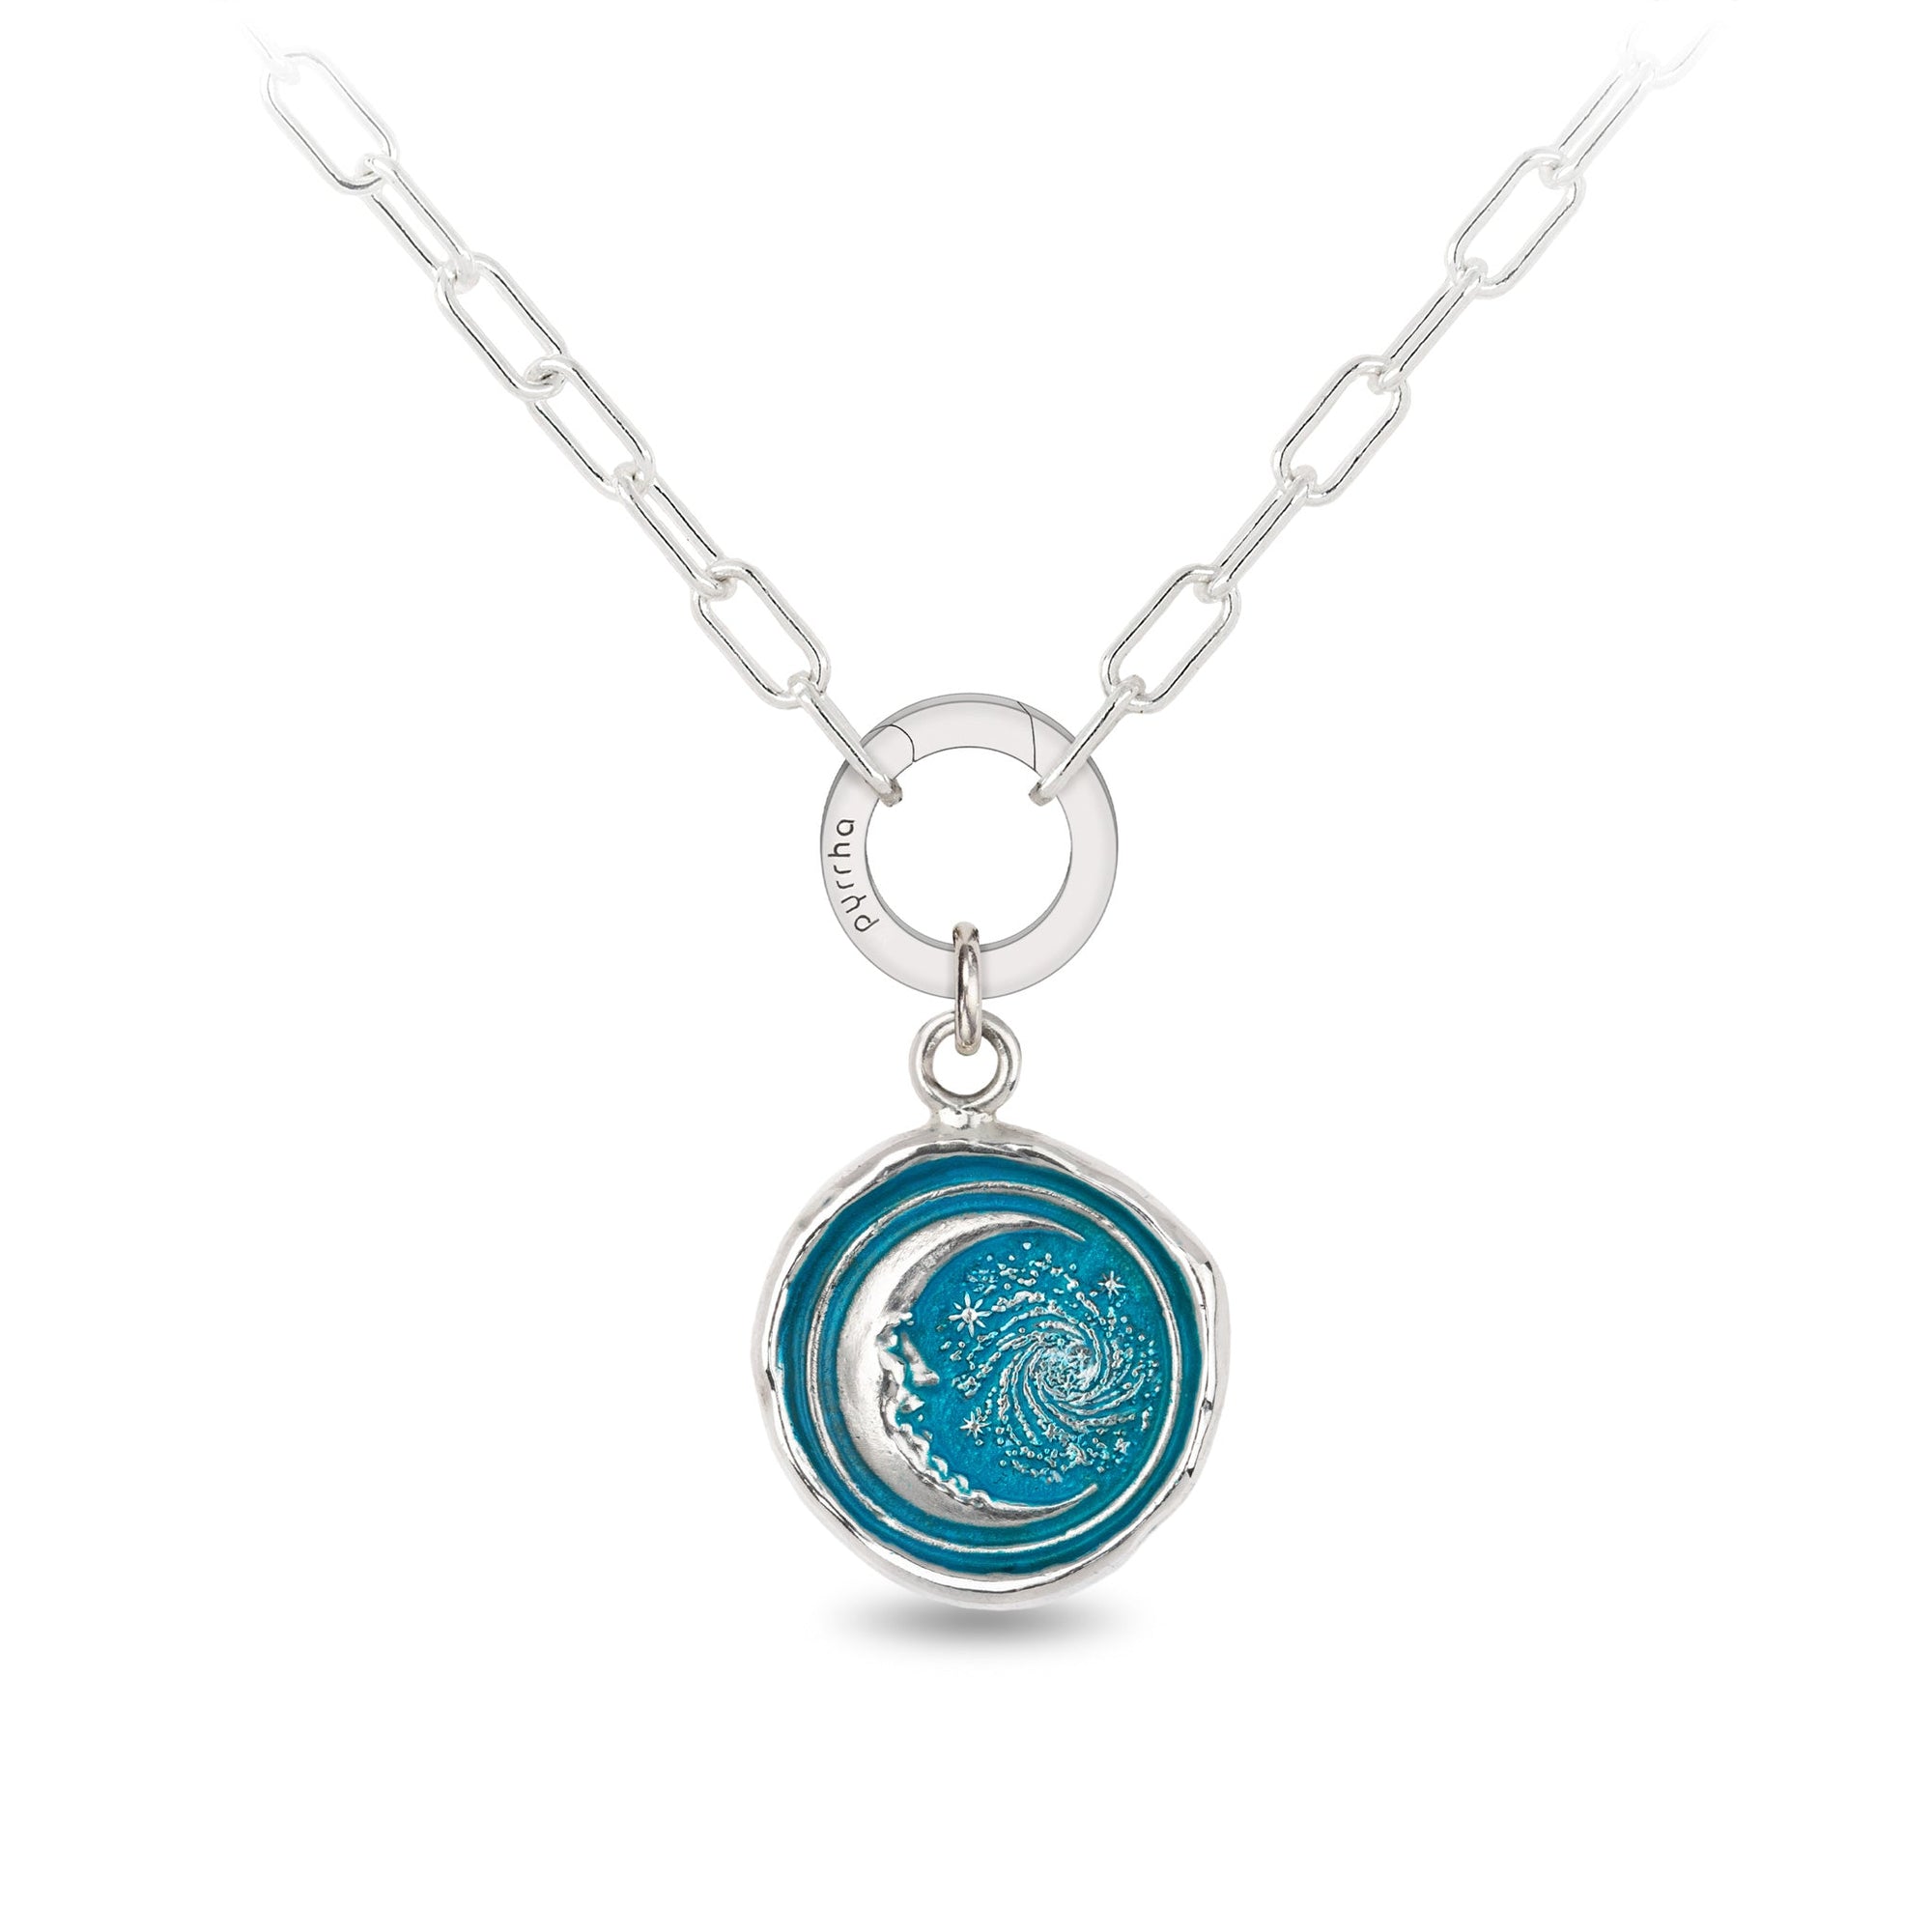 Trust the Universe Small Paperclip Chain Necklace - Capri Blue